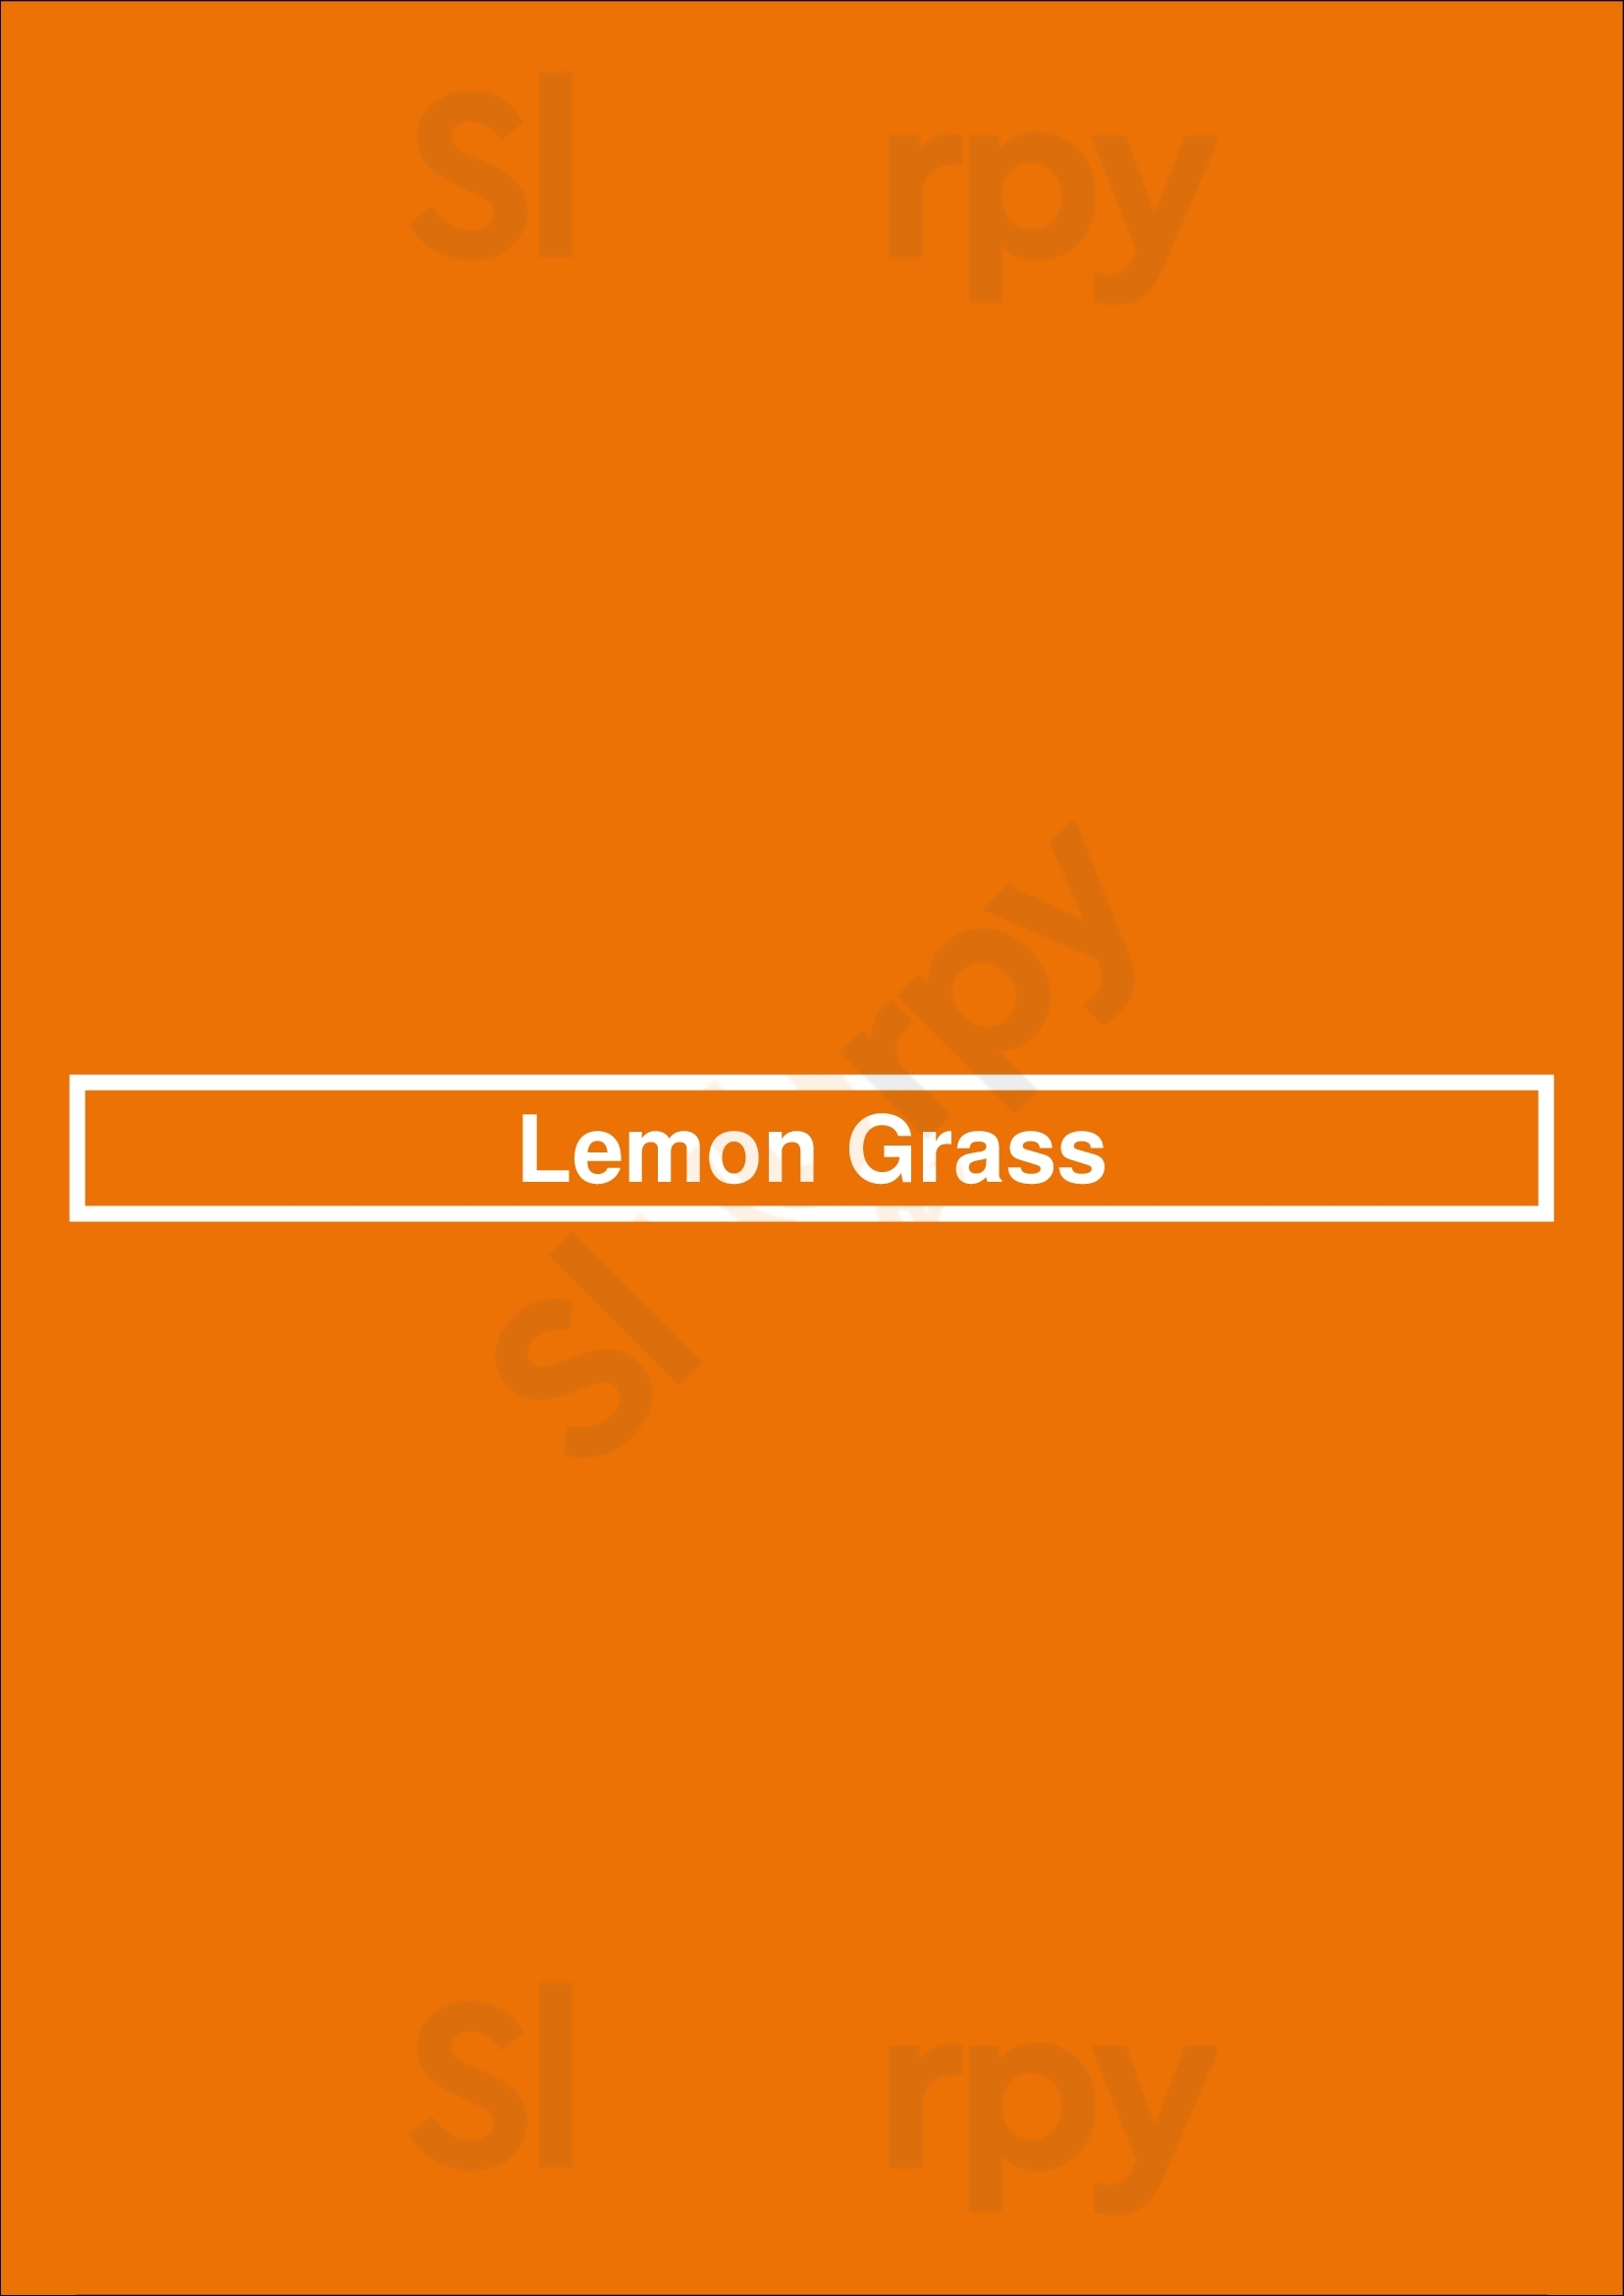 Lemon Grass Ottawa Menu - 1